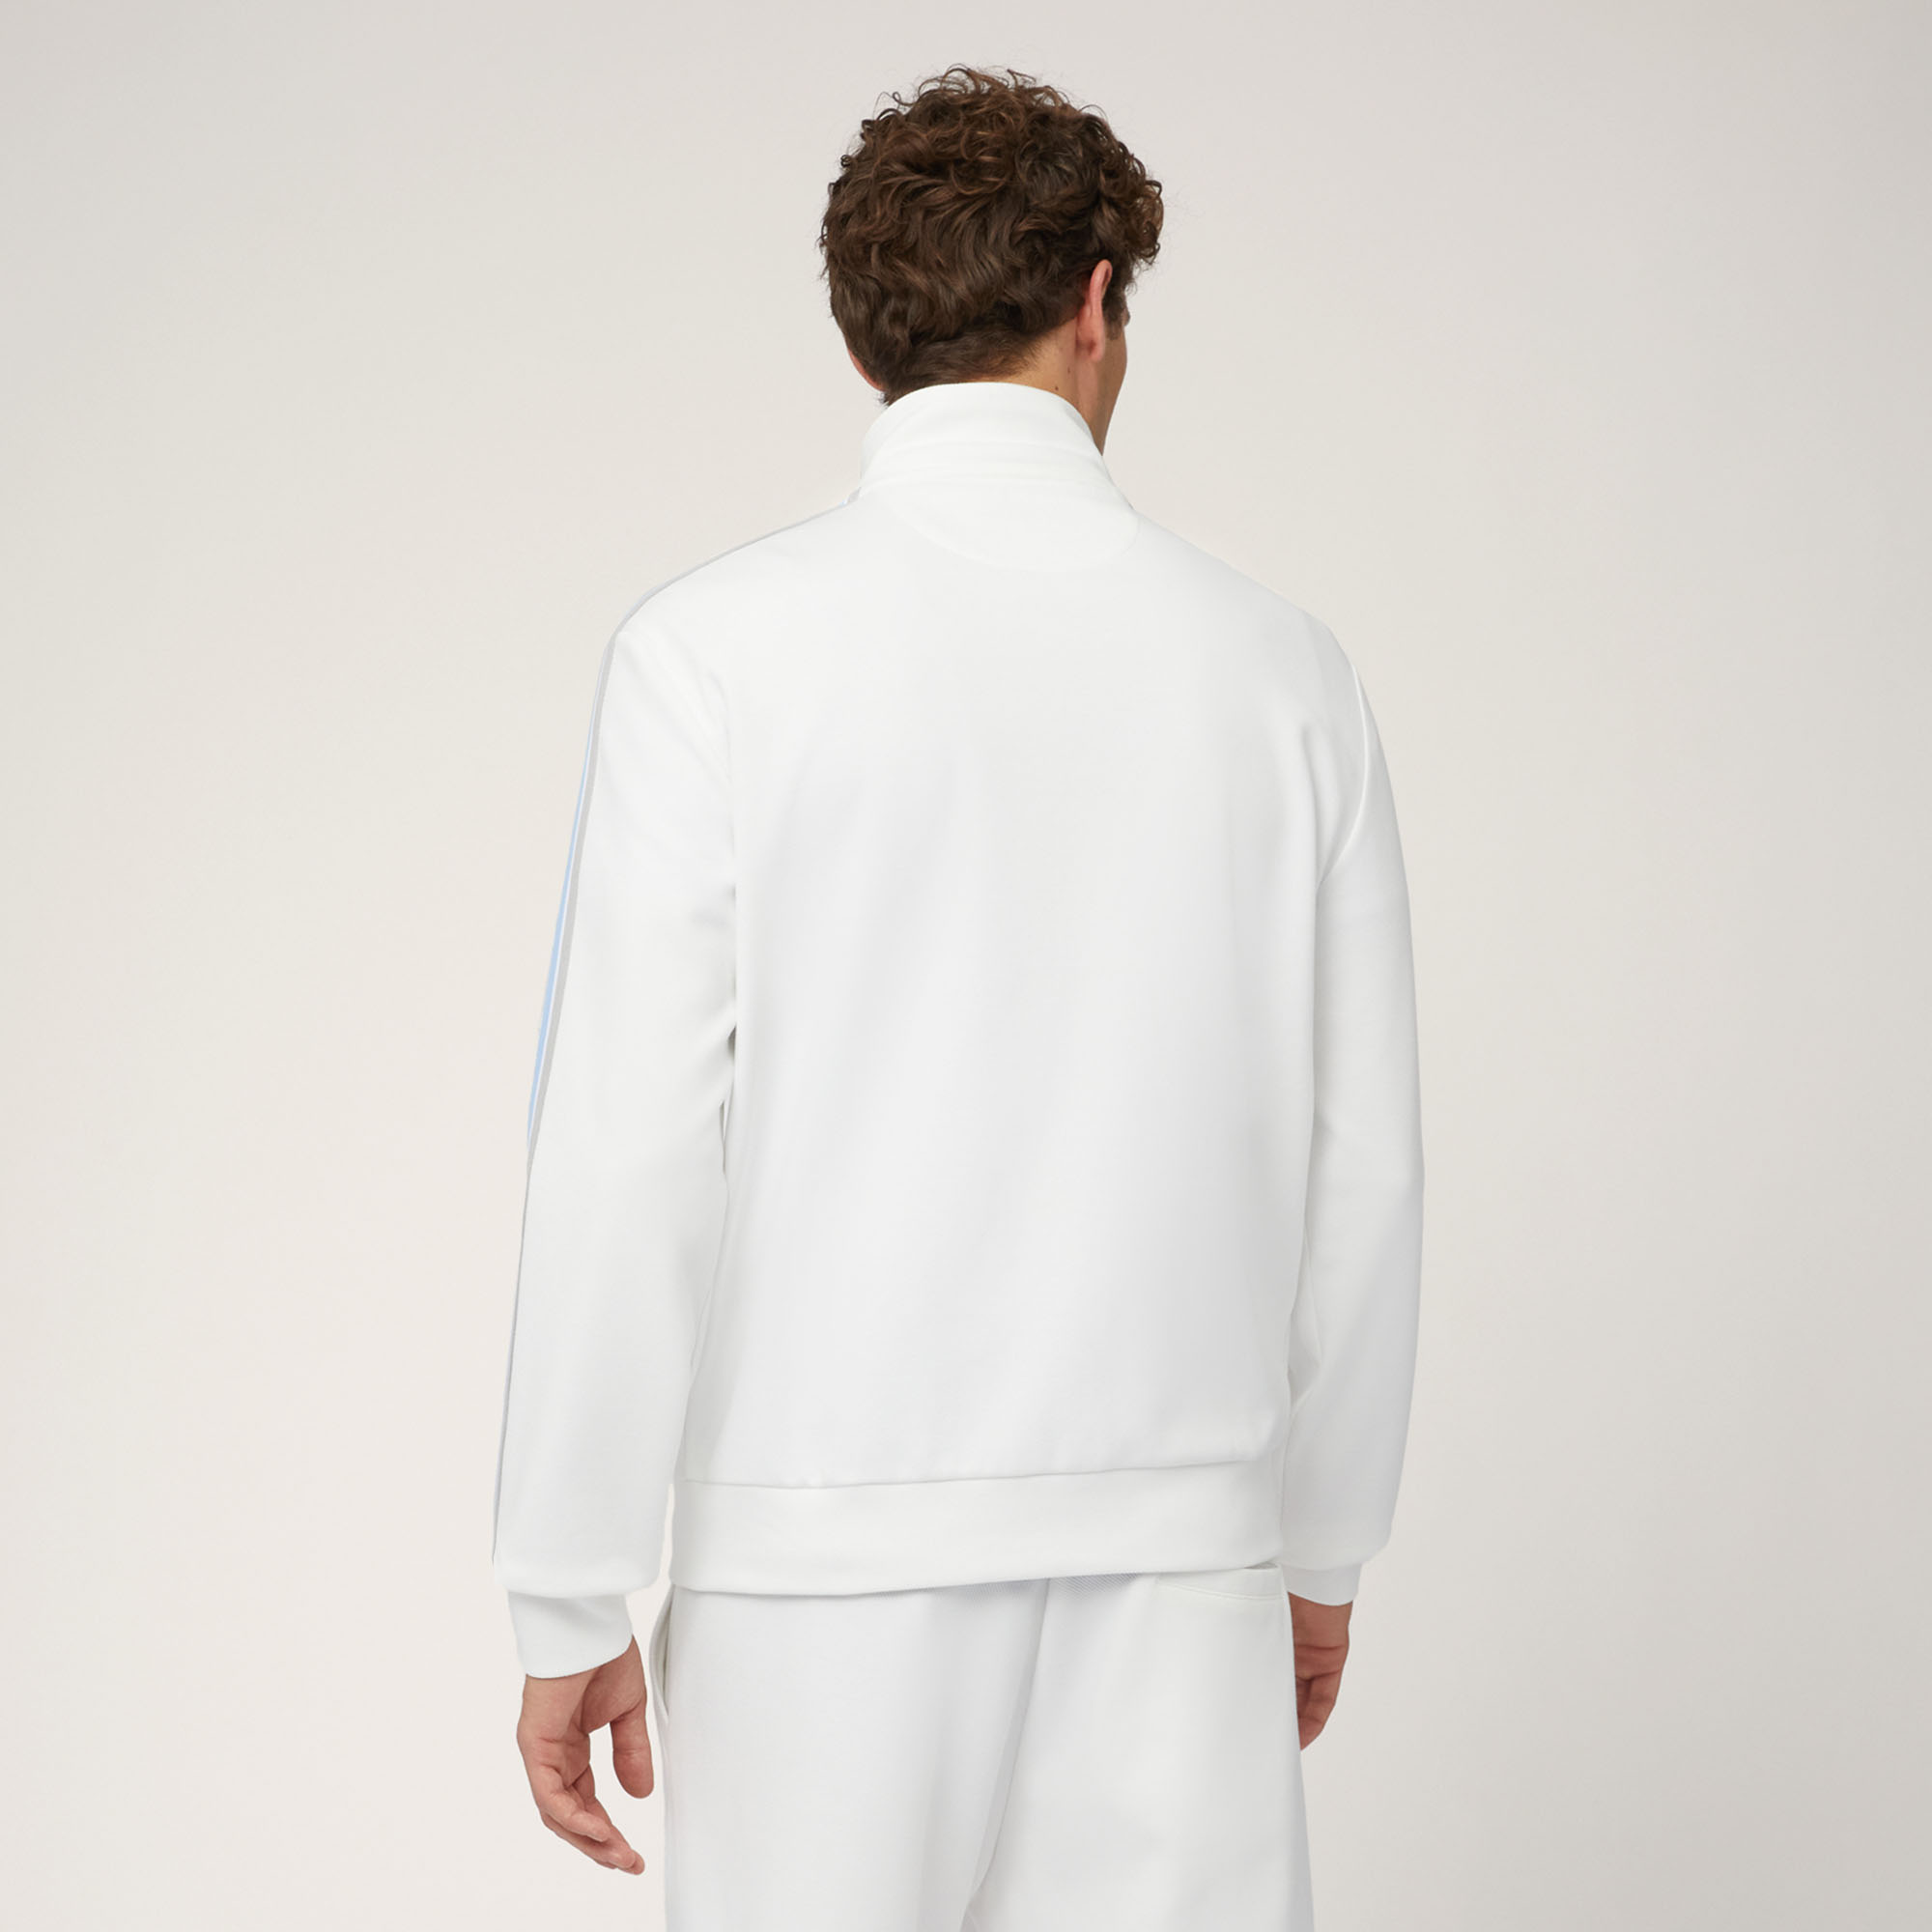 Sweatshirt aus Stretch-Baumwolle mit durchgehendem Reißverschluss und gestreiftem Band, Weiß, large image number 1